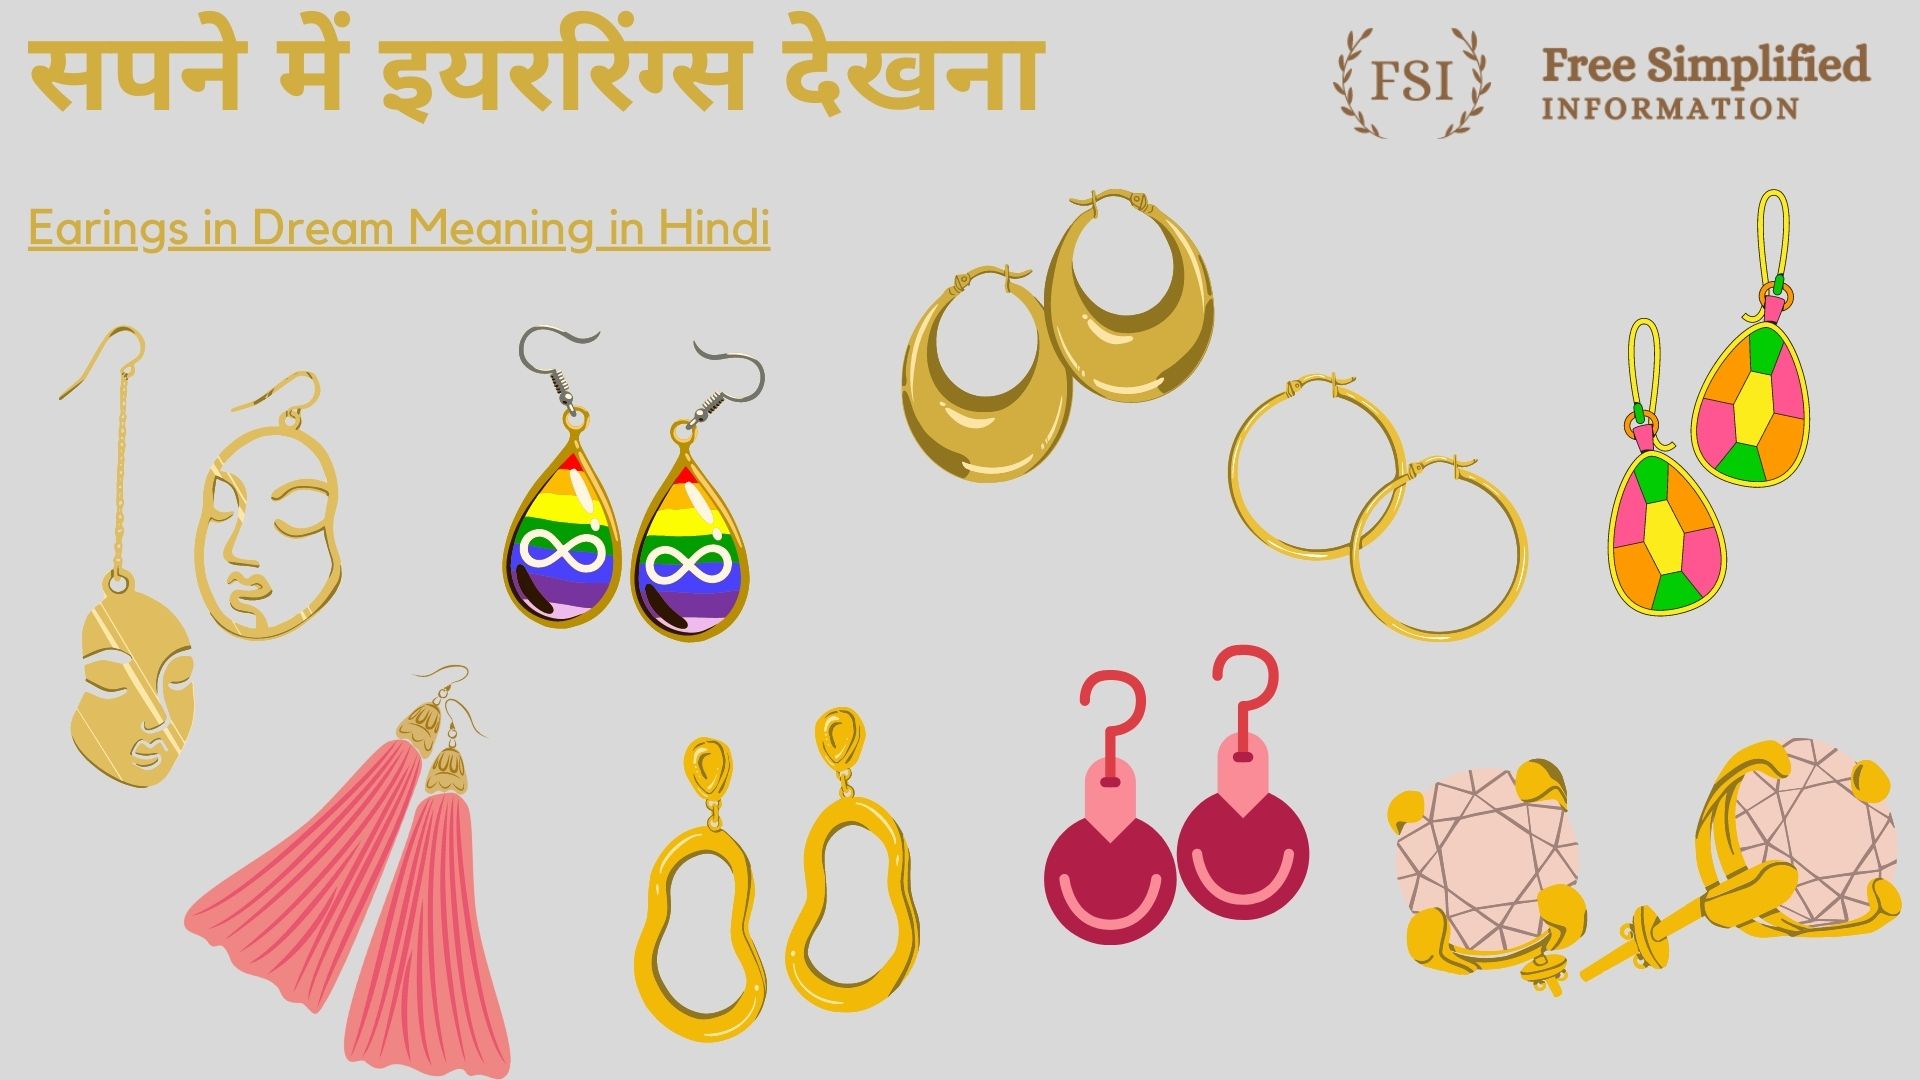 Stylish Earrings शरर सट पर खब जचग यह सटइलस इयररगस ज आपक  लक पर लग दग चर चद  Tapti Darshan